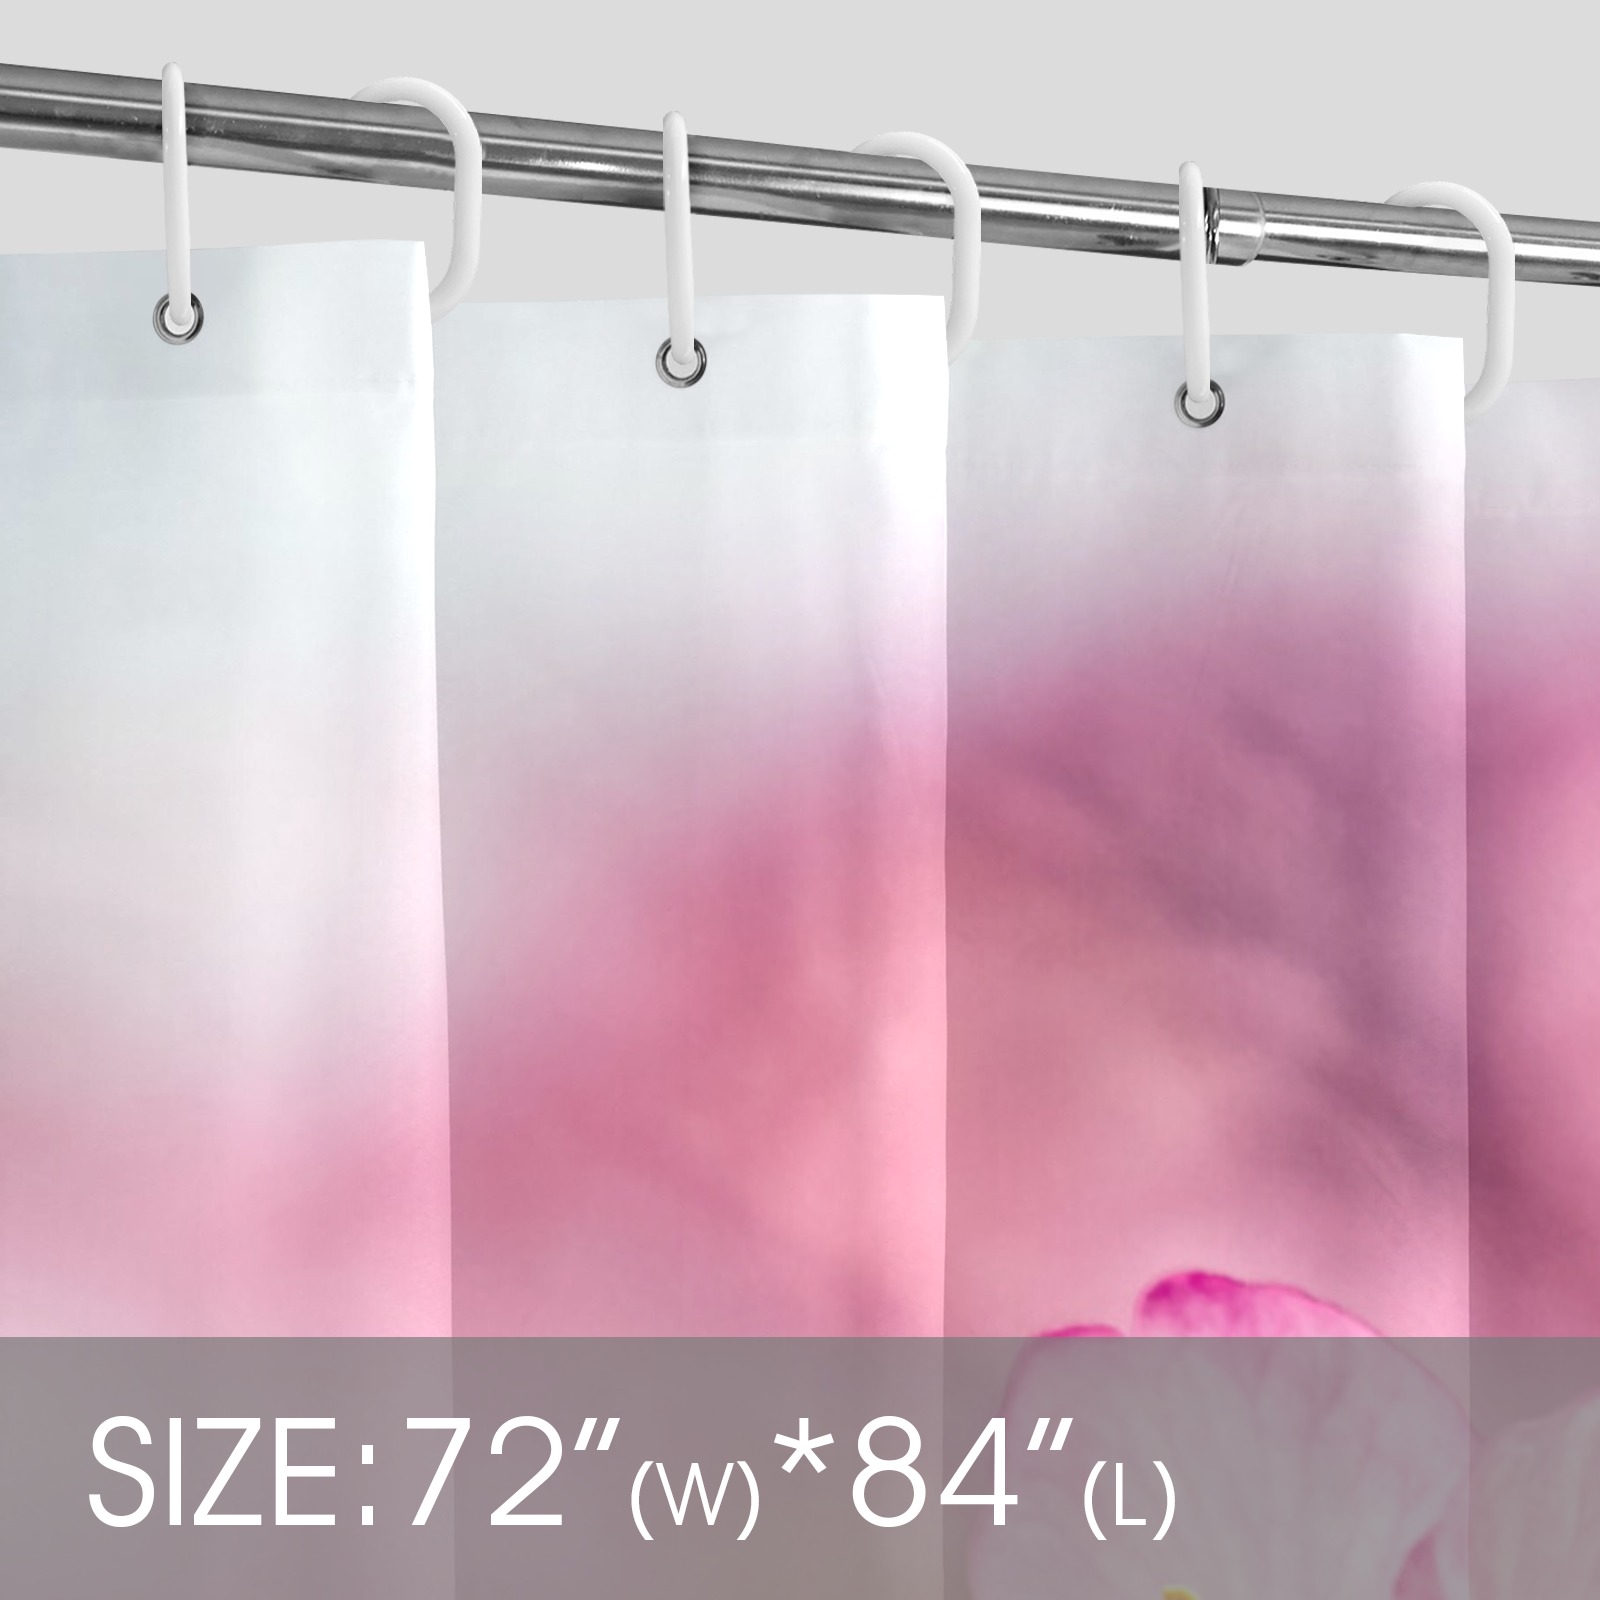 Striking pink sakura cherry flowers, pink mist. Shower Curtain 72"x84"